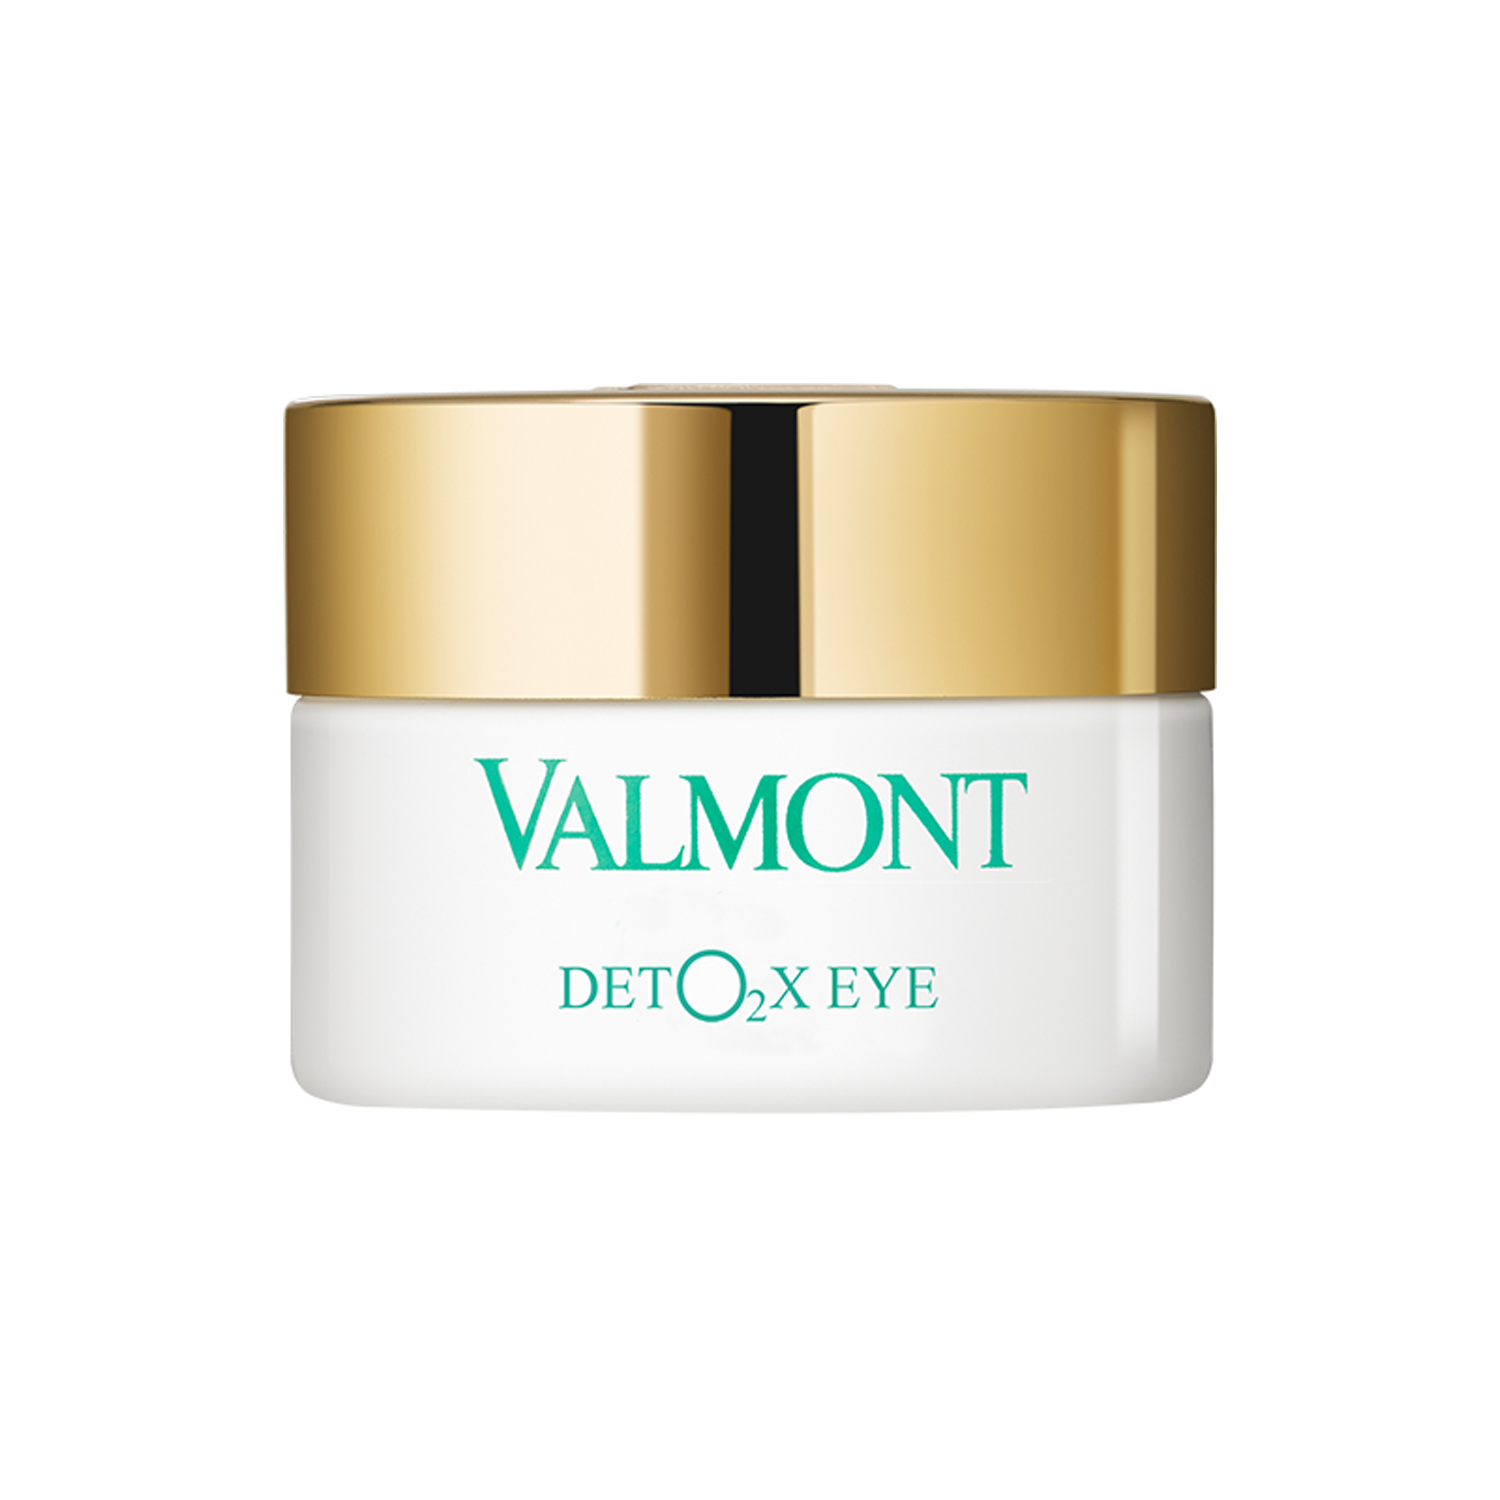 Valmont Deto2x Eye - Відновлюючий кисневий крем для контуру очей